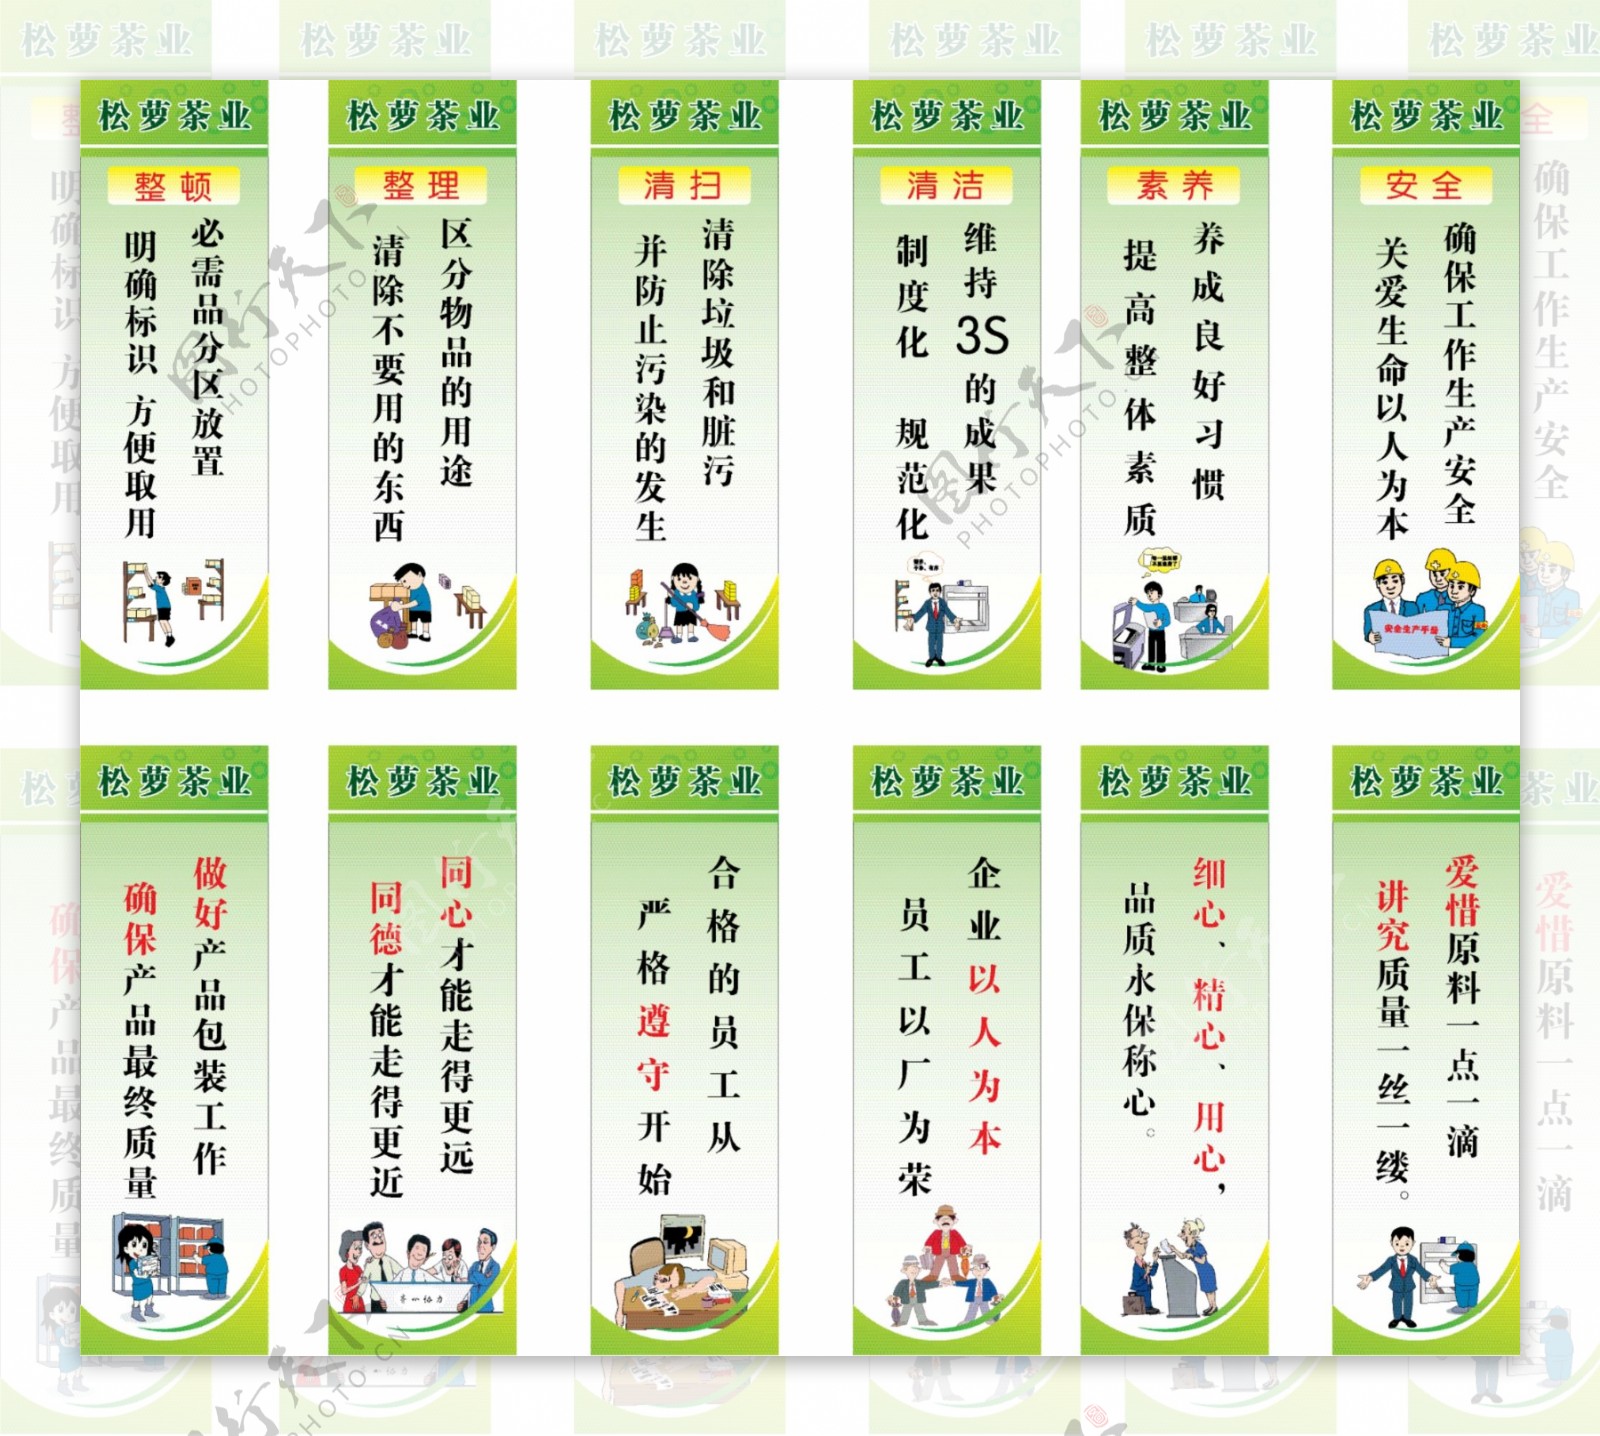 松萝茶业企业6S管理标准展板图片